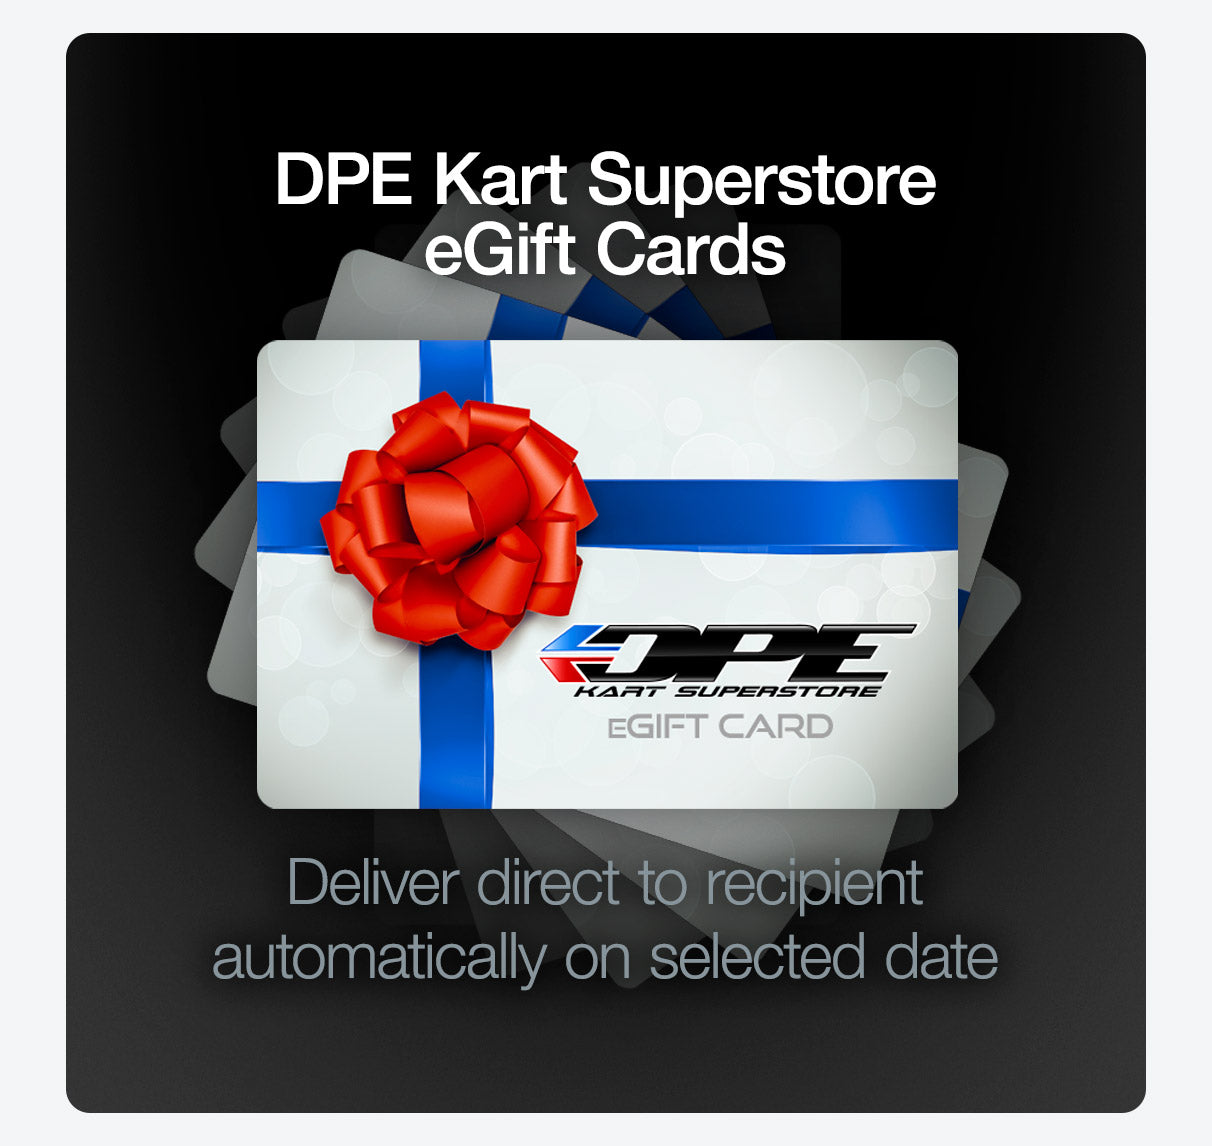 DPE Kart Superstore Gift Card. Go Kart gift card